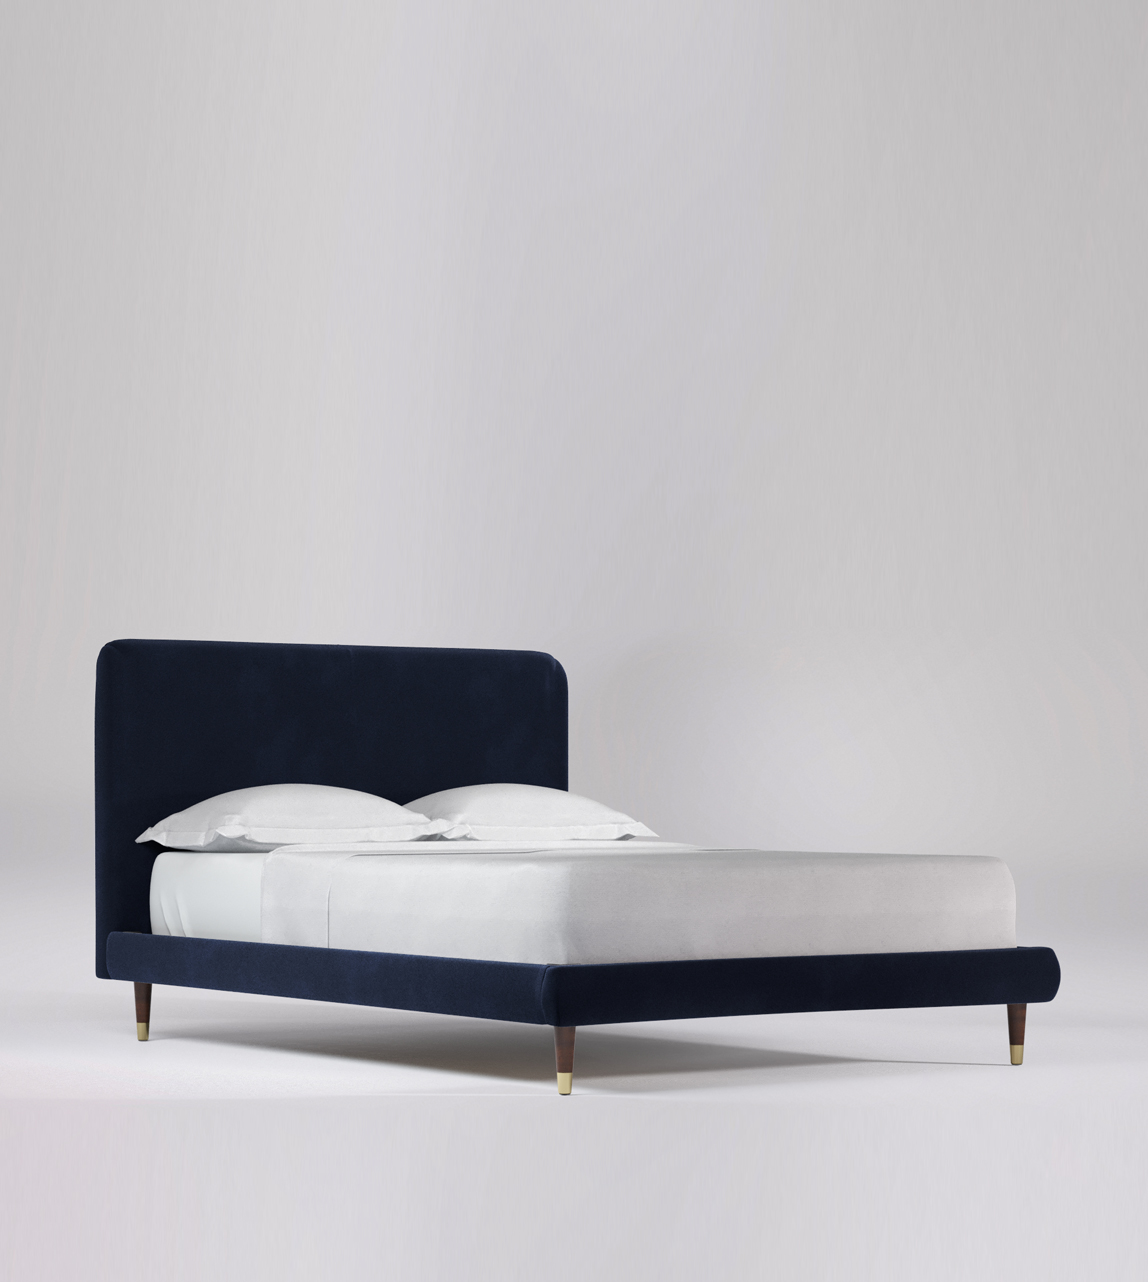 Brockham King Size Bed Frame Swoon, Handy Living Bed Frame King